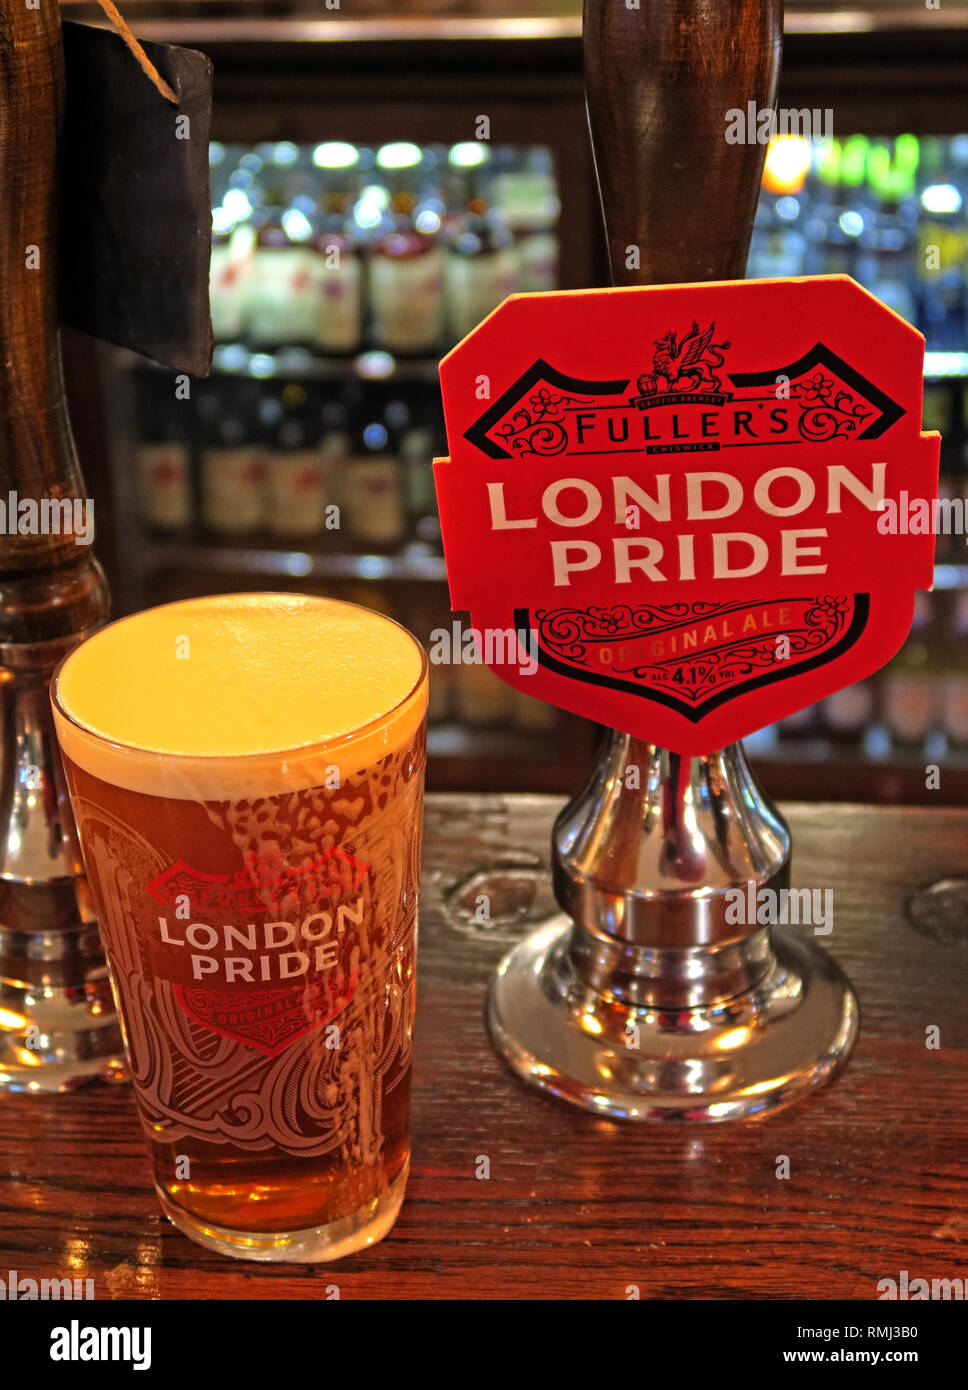 Fullers London Pride Handpumpe auf eine Bar/Pub, North West England, Best bitter, CAMRA ale alkoholisches Getränk, in Chiswick, West London gebraut Stockfoto